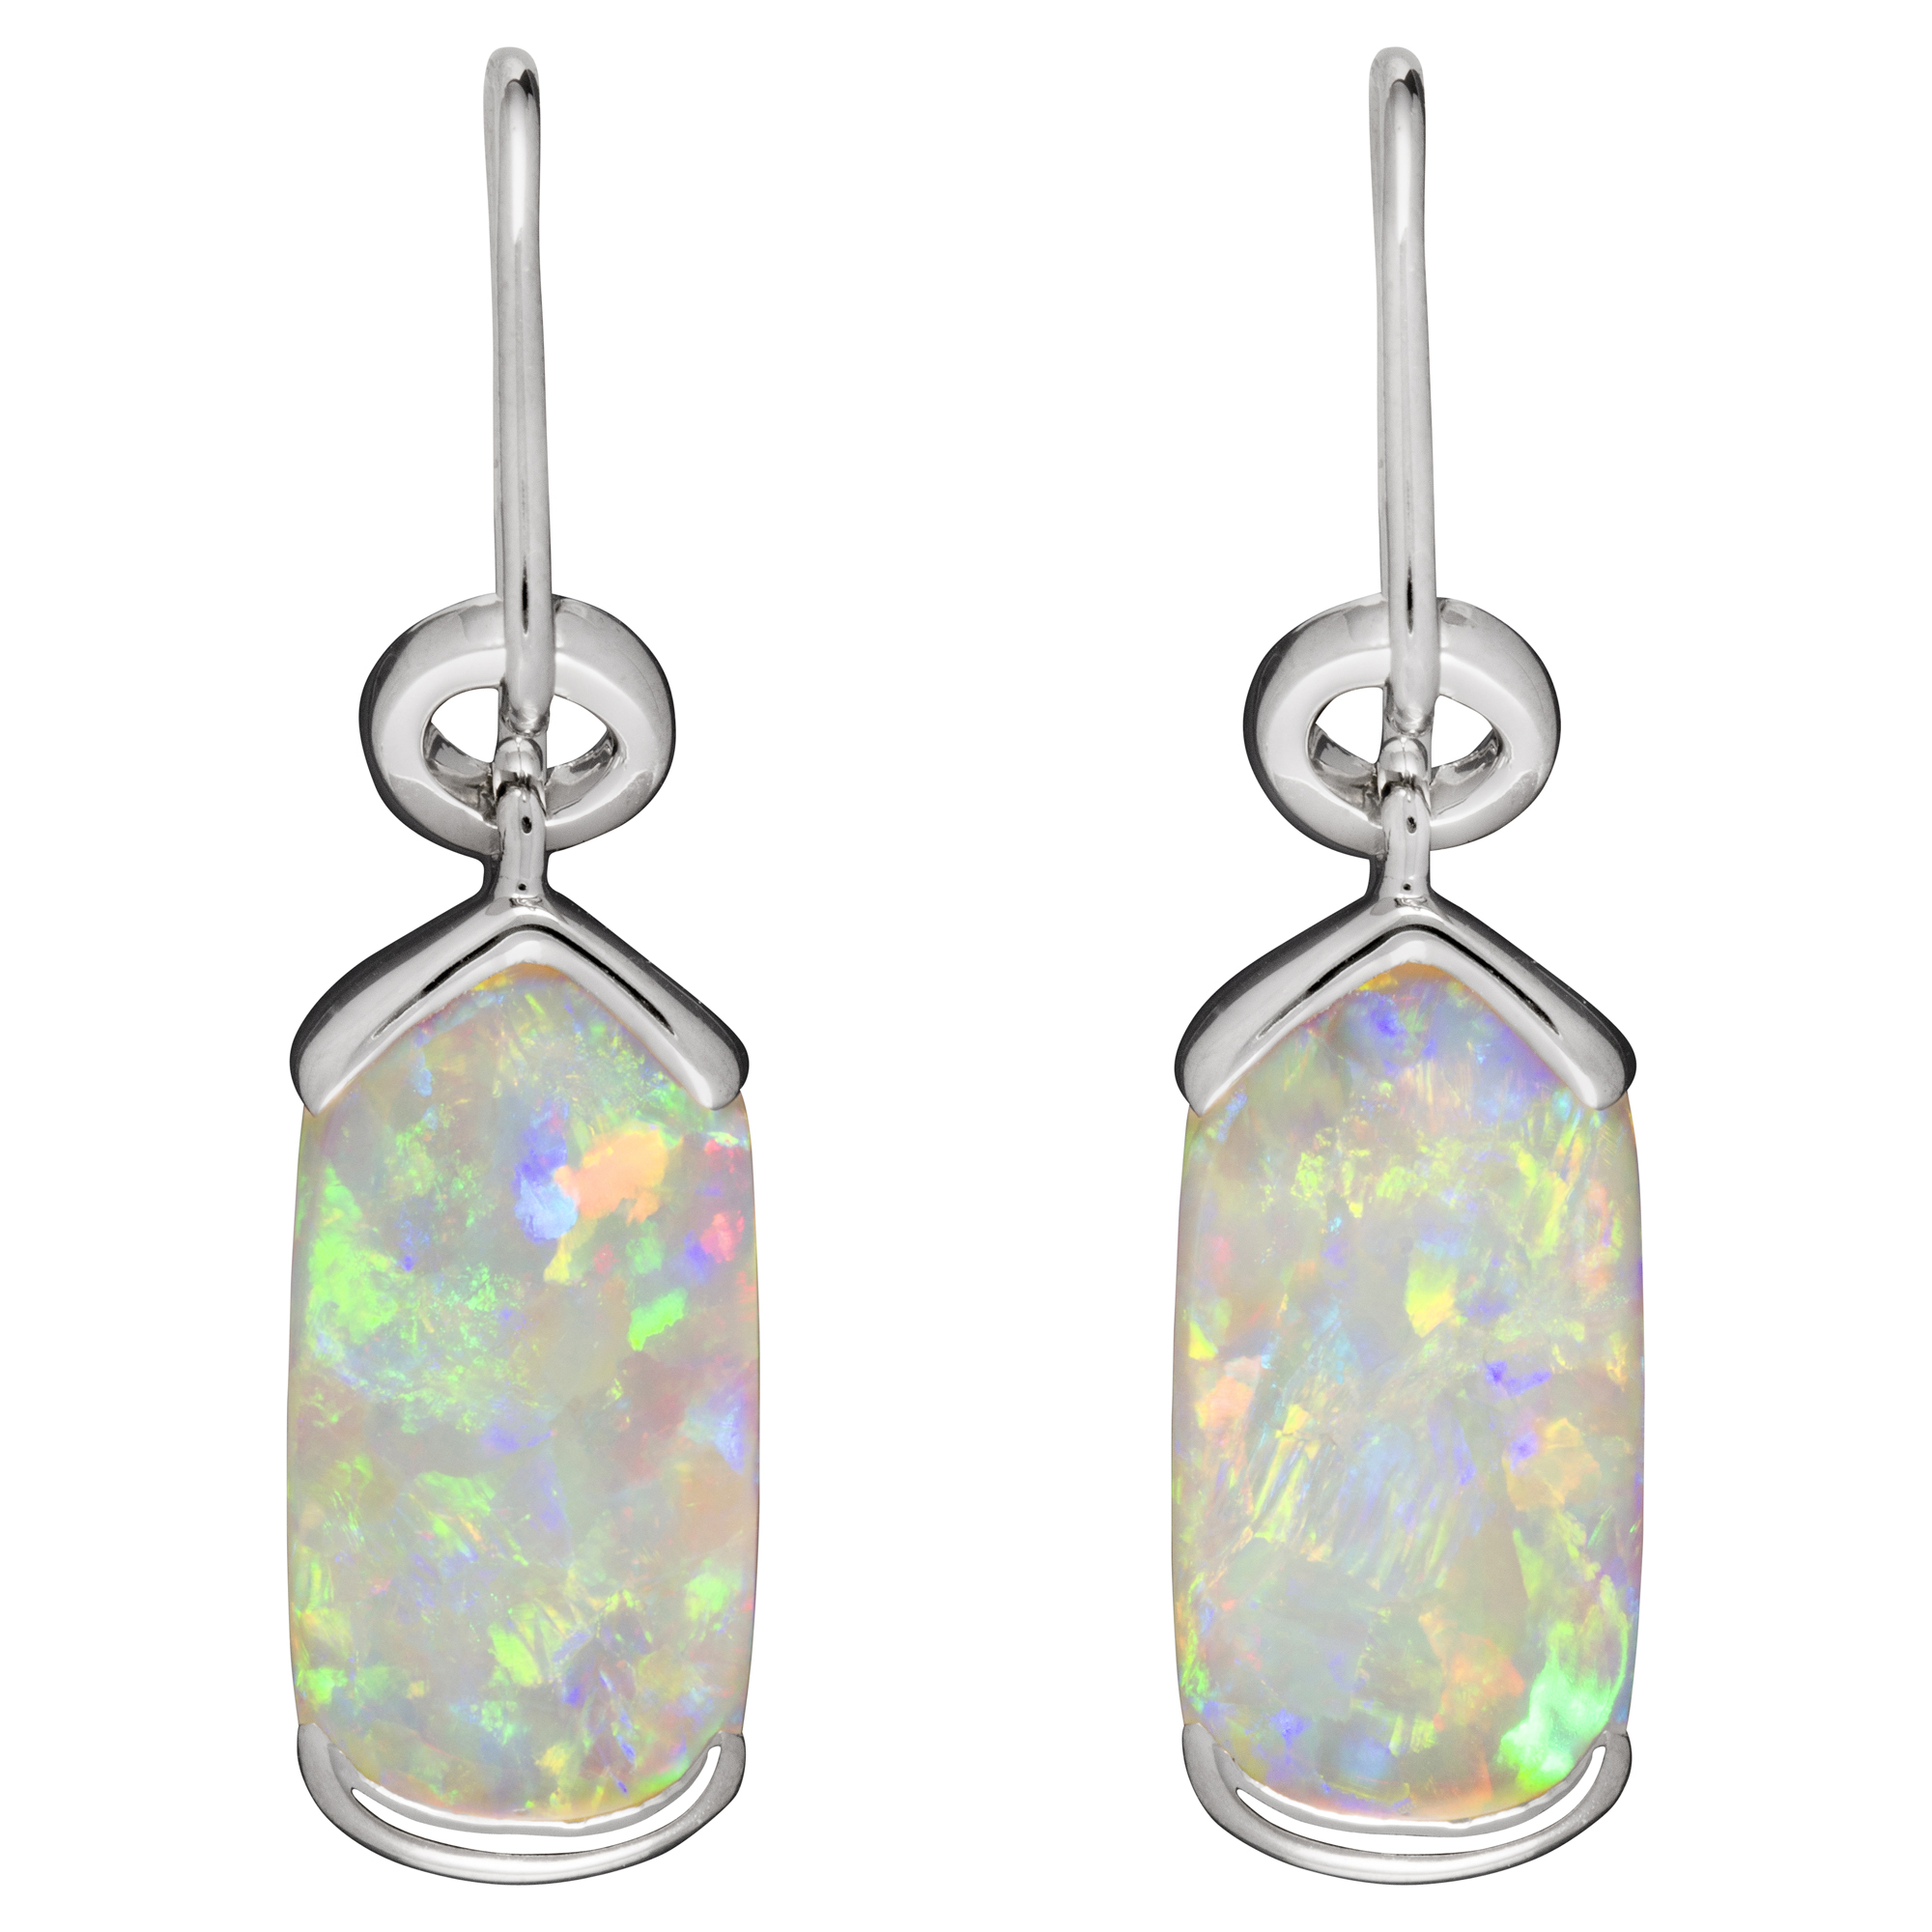 Share more than 166 white opal earrings super hot - seven.edu.vn